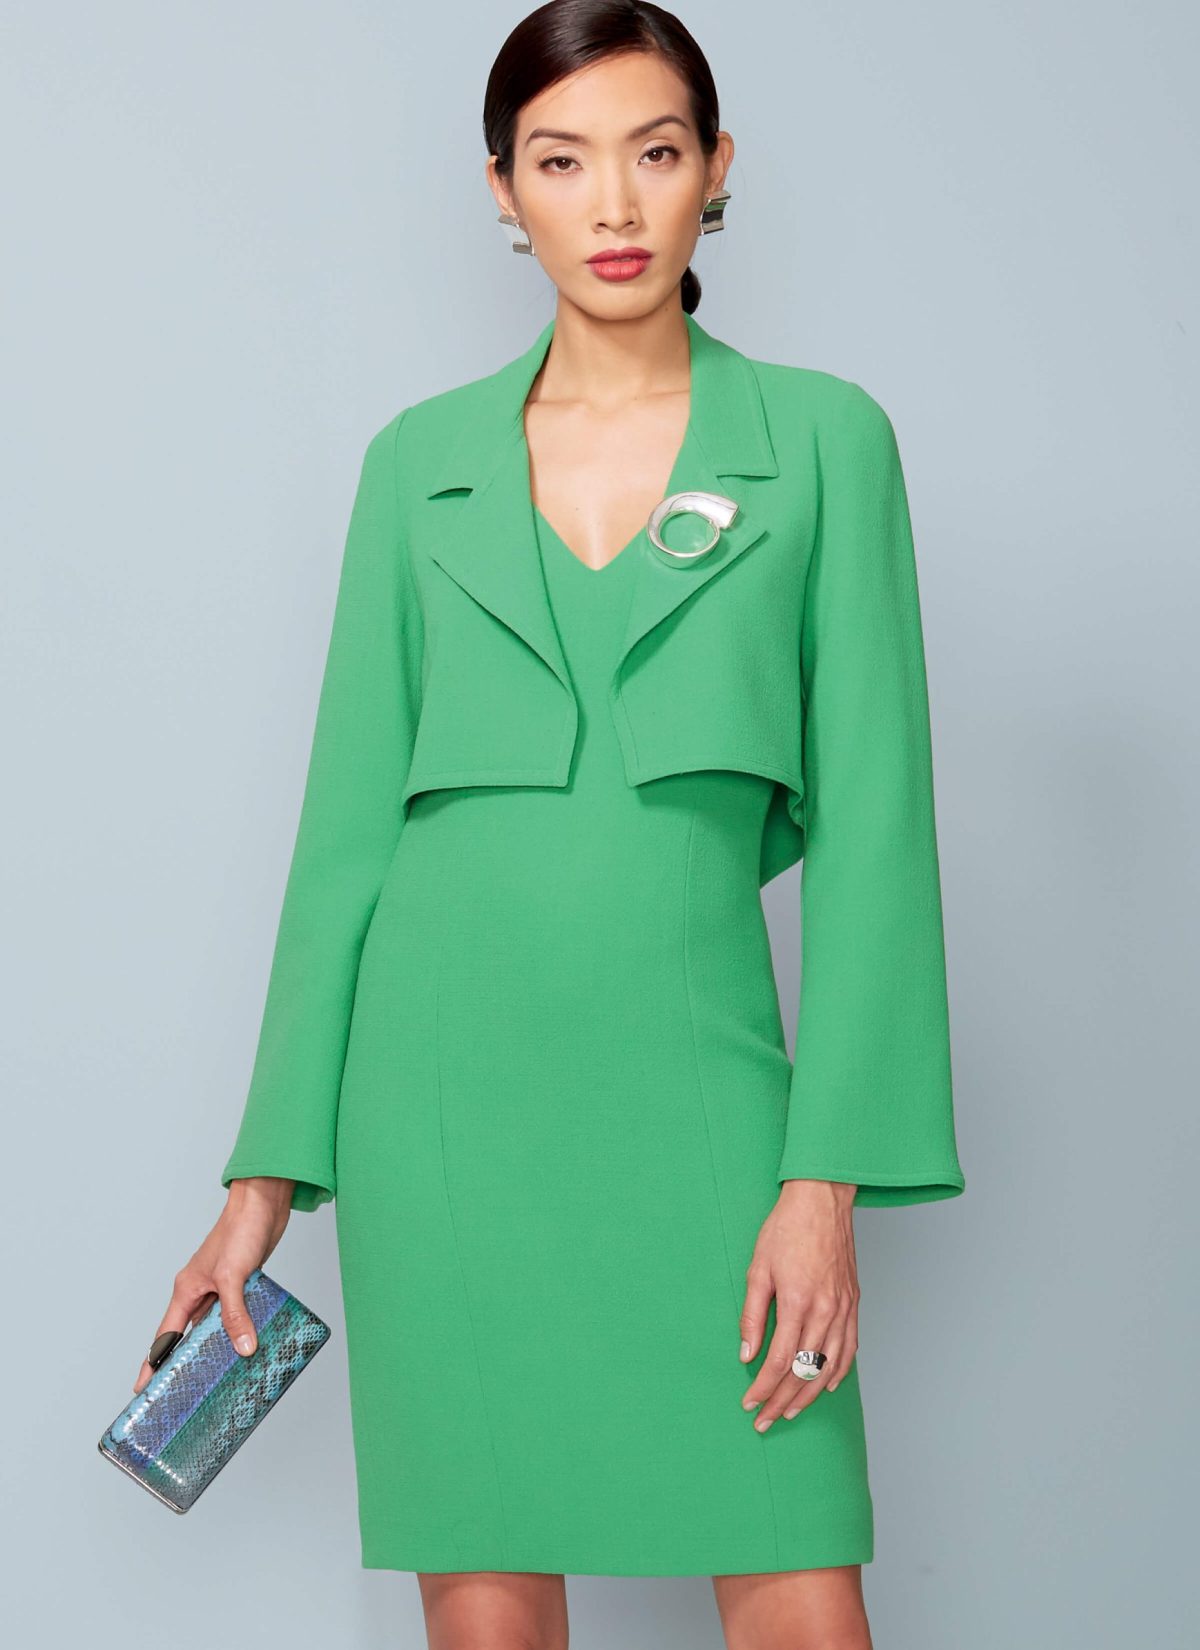 Vogue Patterns V1536 Misses'/Misses' Petite Cropped Jacket and V-Neck, Princess Seam Dress